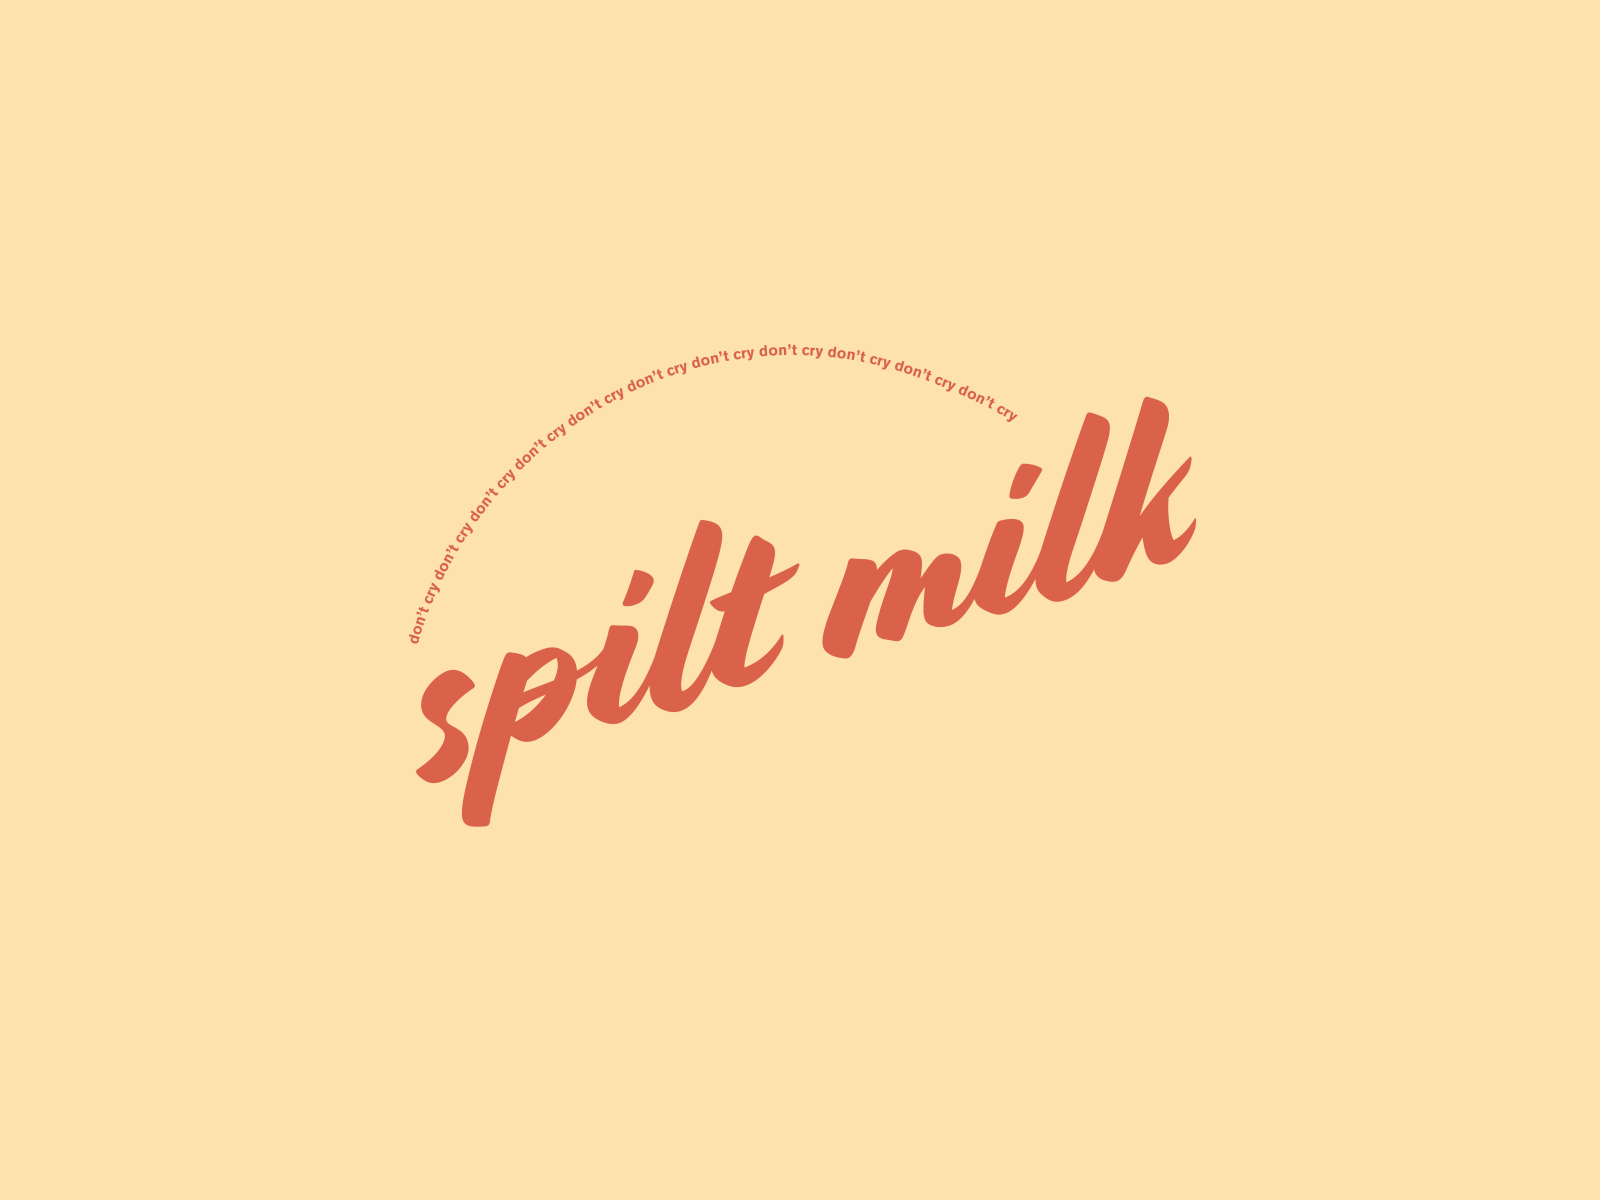 Logo Design—spilt milk by Alex Hoernlein on Dribbble